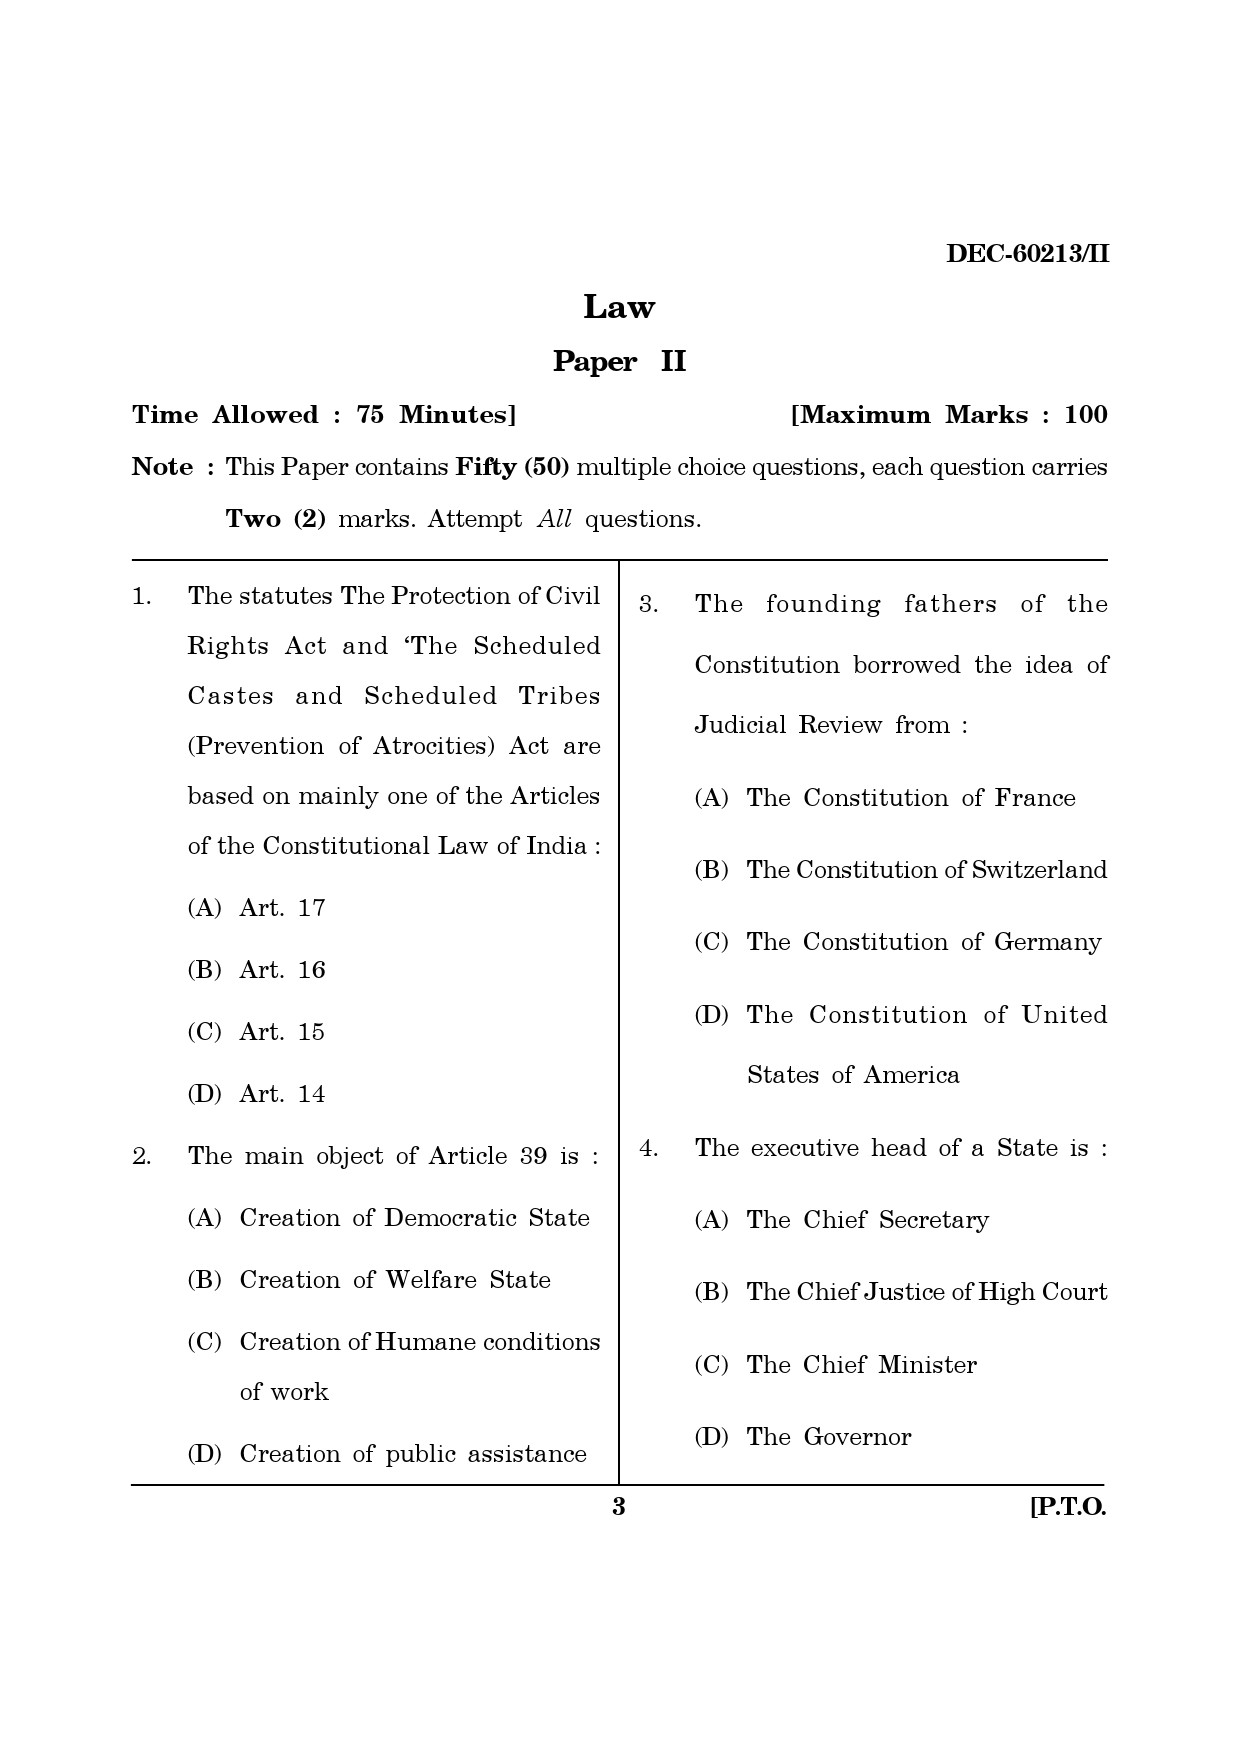 Maharashtra SET Law Question Paper II December 2013 2